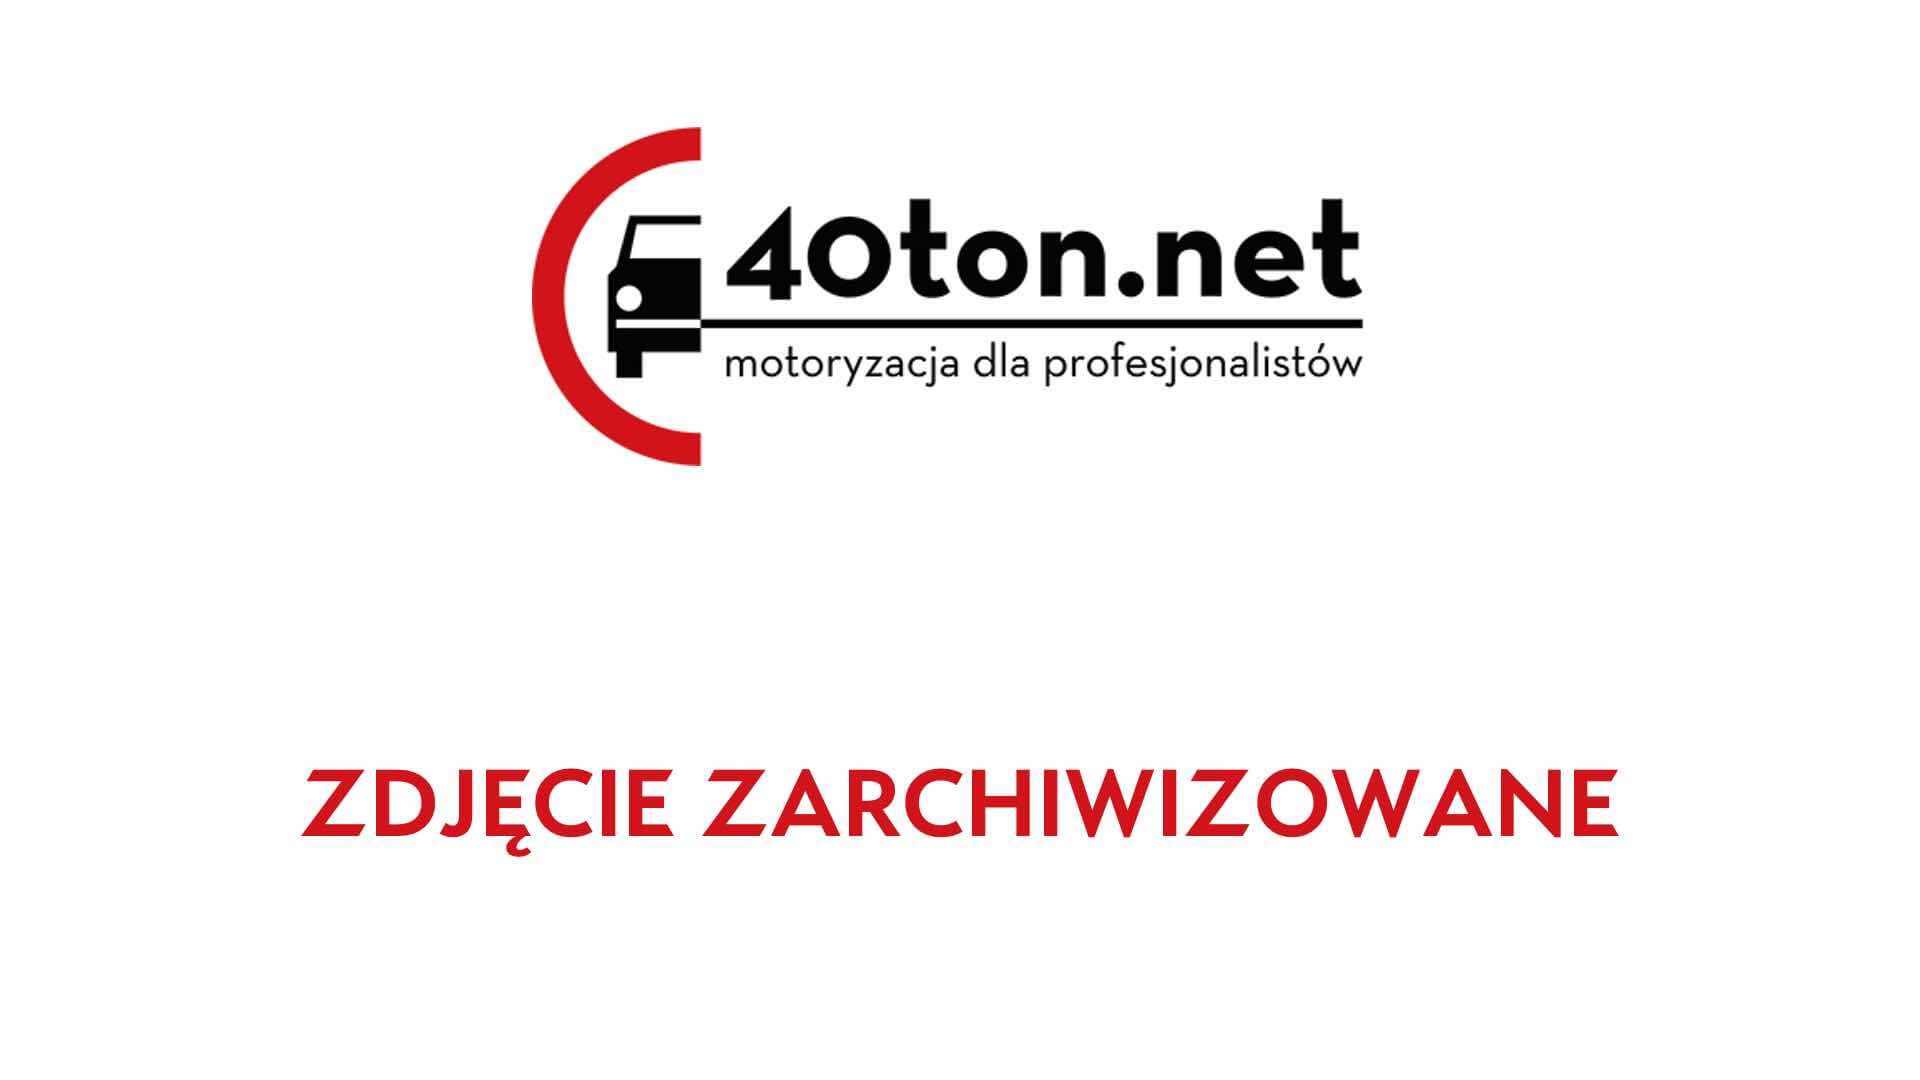 witd_szczecin_transport_ryby_zbyt_ciezki_2